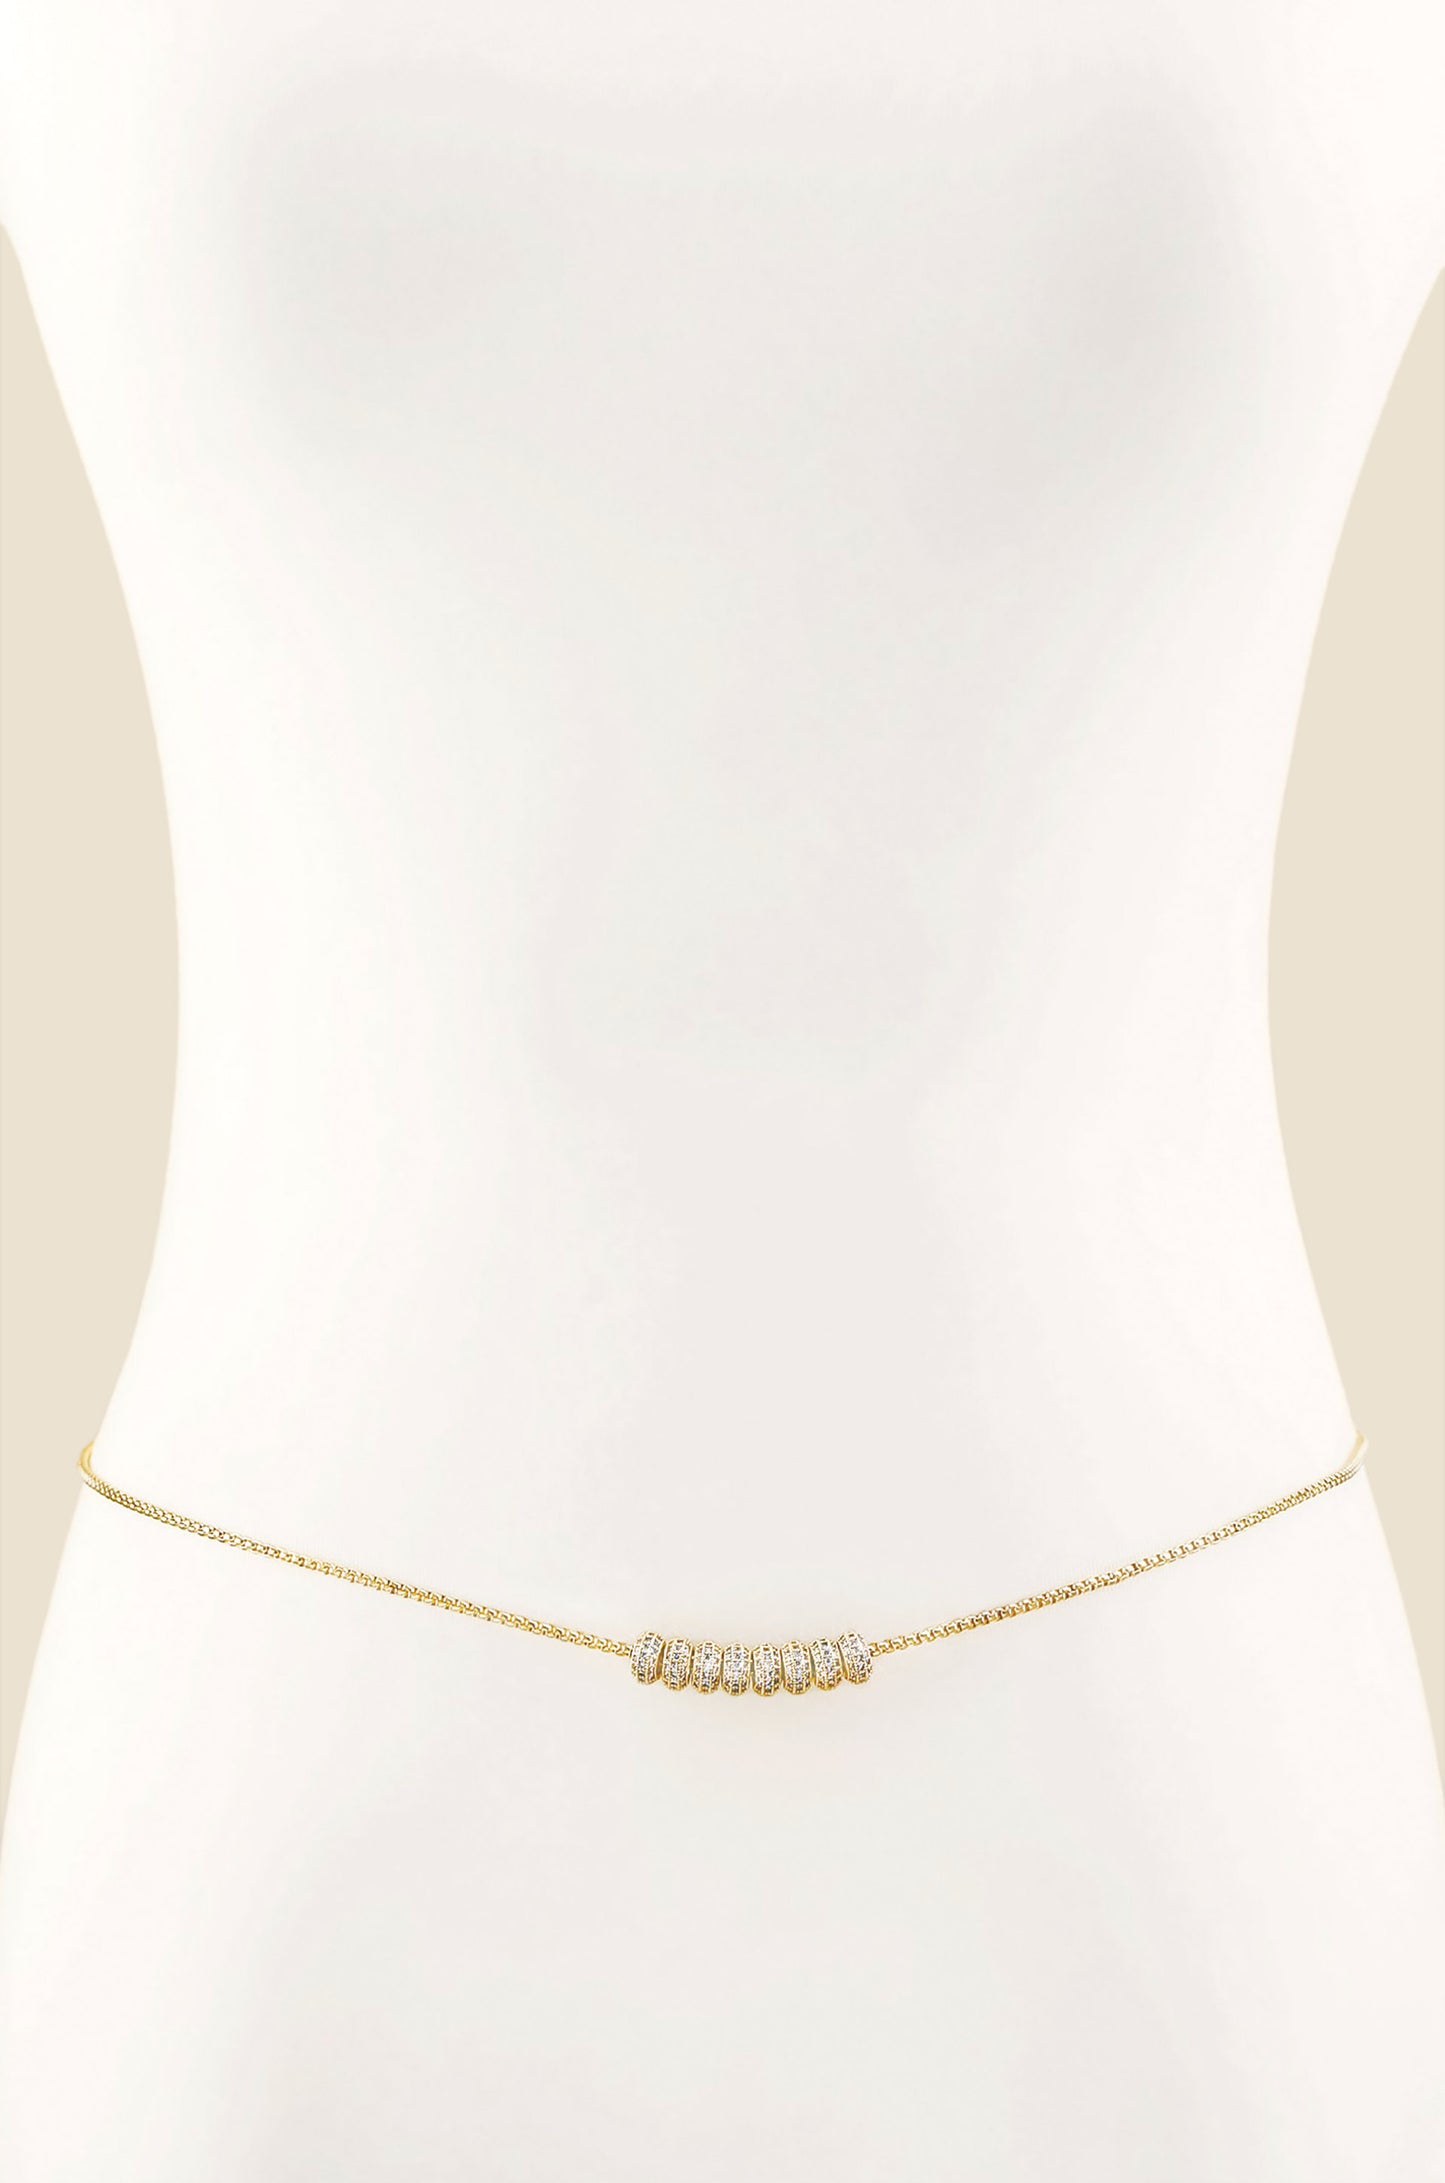 Body Chain – Women's Full Body Chain Jewelry – Ettika